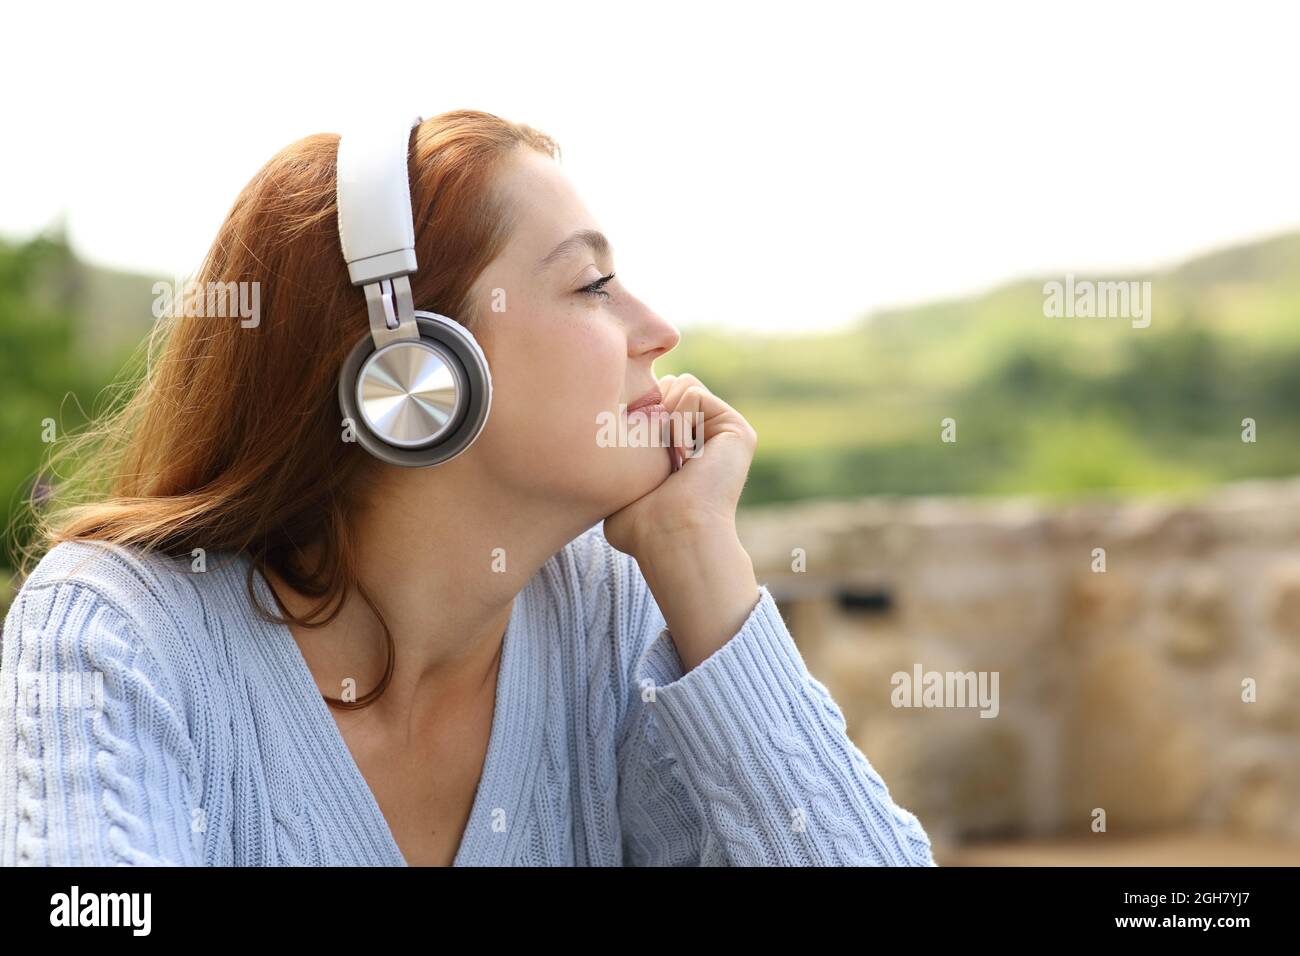 Profil einer Frau, die auf Kopfhörern Musik hört, um die Ansichten im Freien zu betrachten Stockfoto